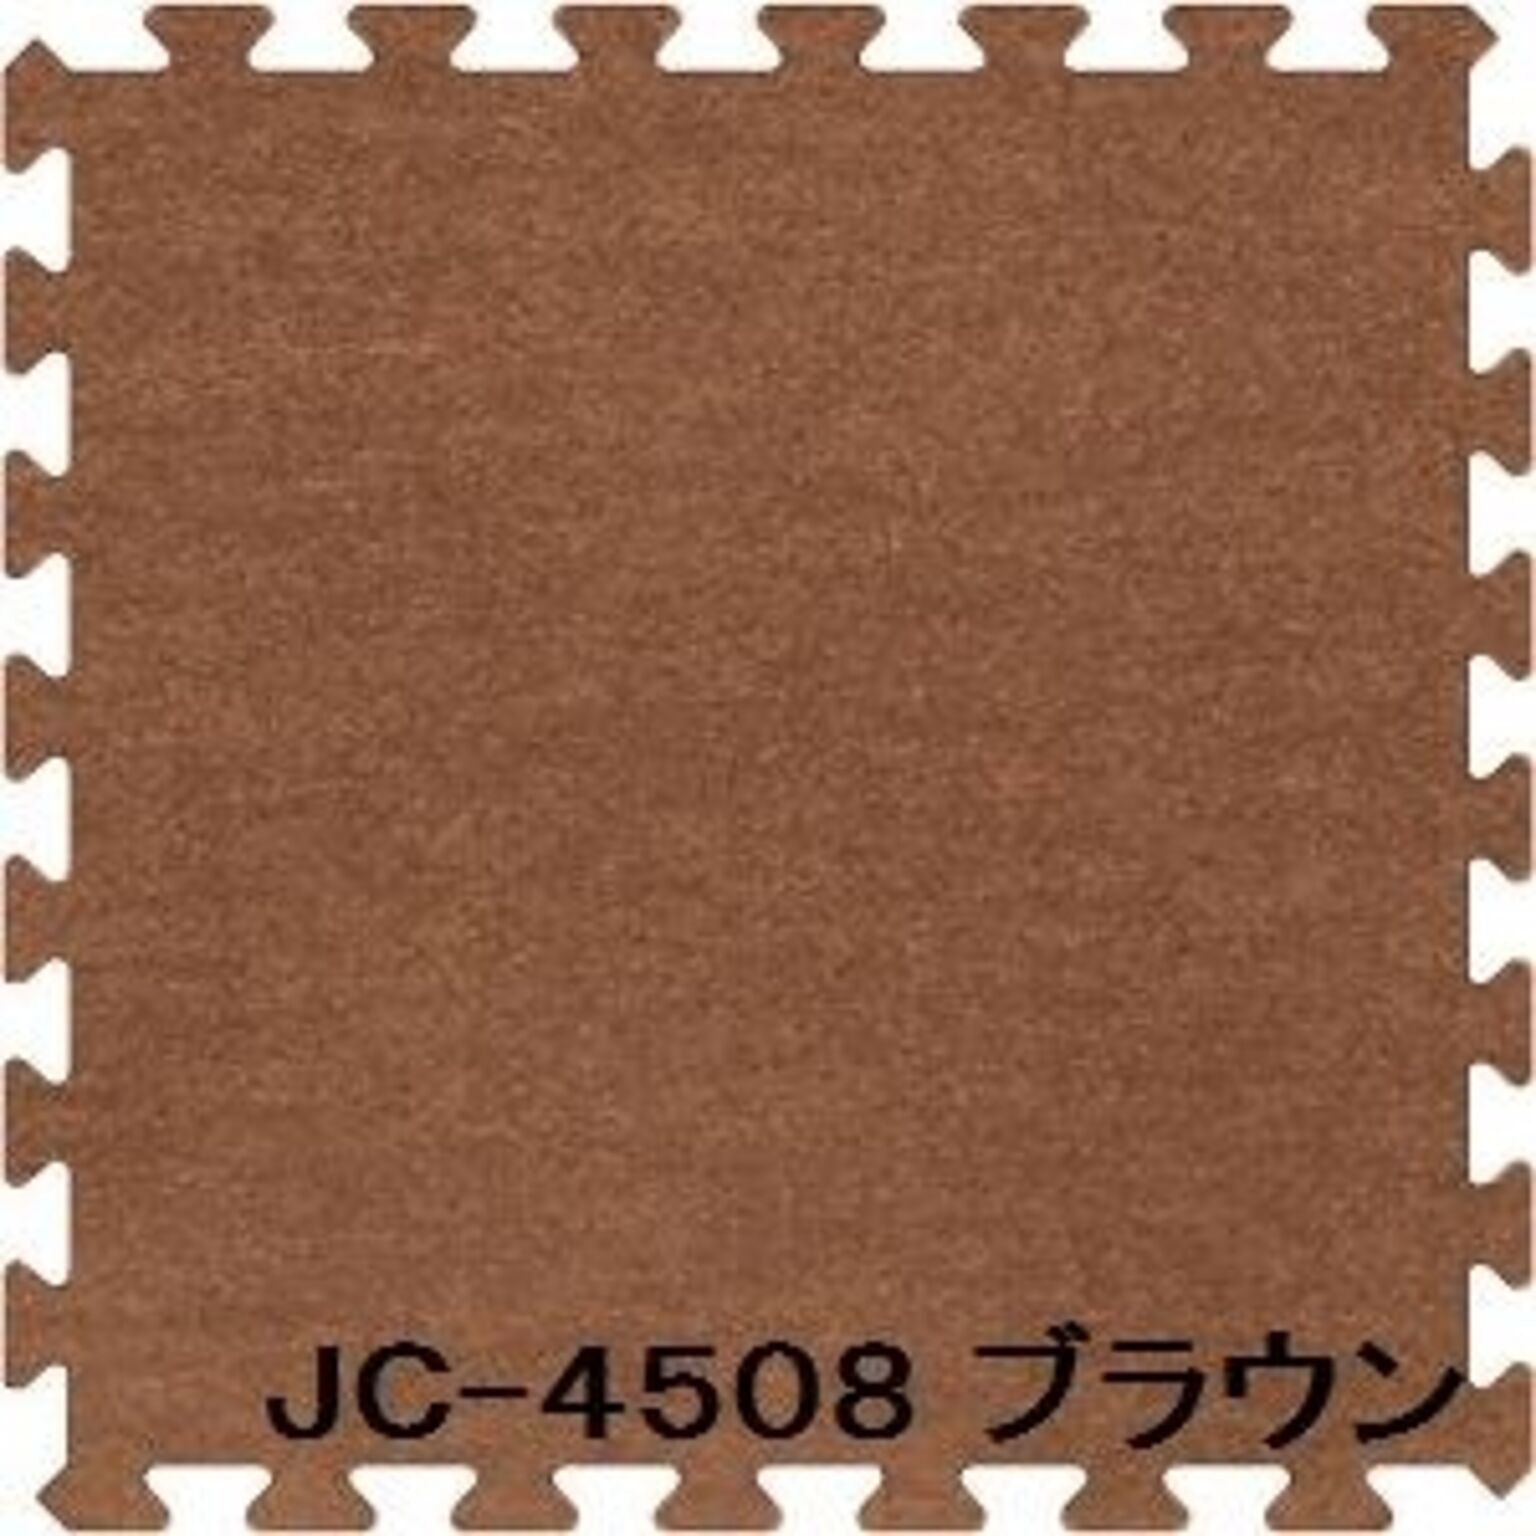 ジョイントカーペット JC-45 20枚セット 色 ブラウン サイズ 厚10mm